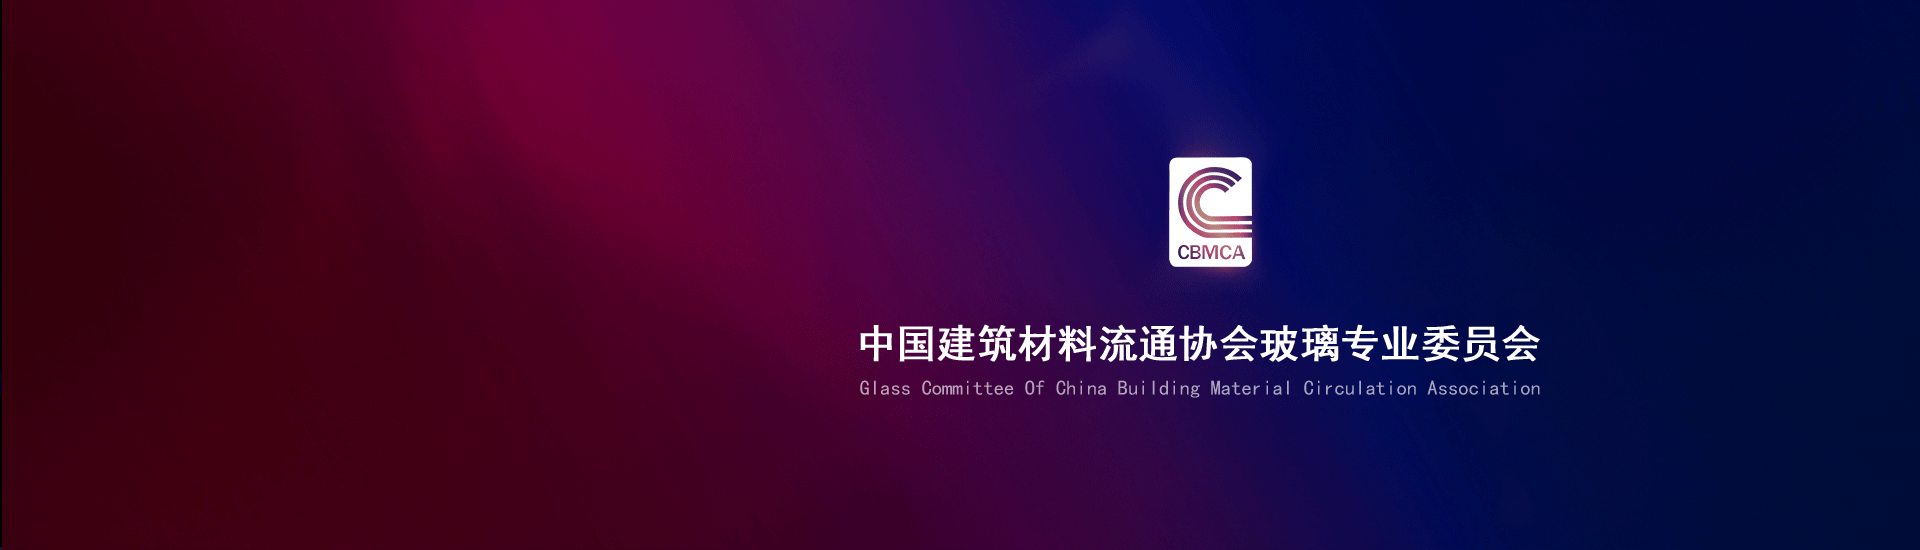 中国建筑材料流通协会防火玻璃委员会